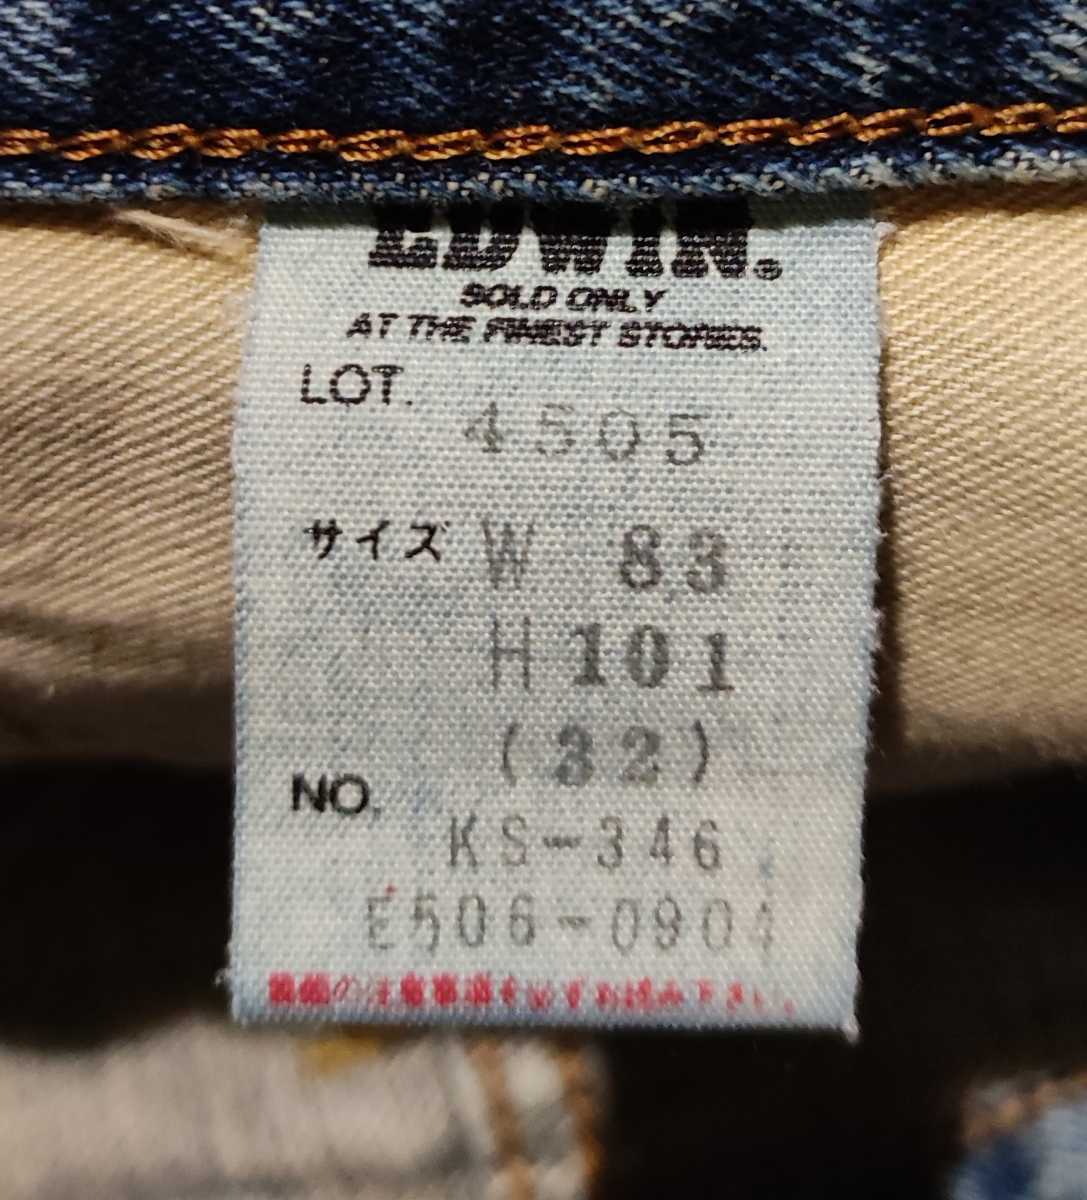 [W32]EDWIN Edwin Denim брюки джинсы сделано в Японии талия примерно 40cm длина ног примерно 74cm кромка примерно 23cm